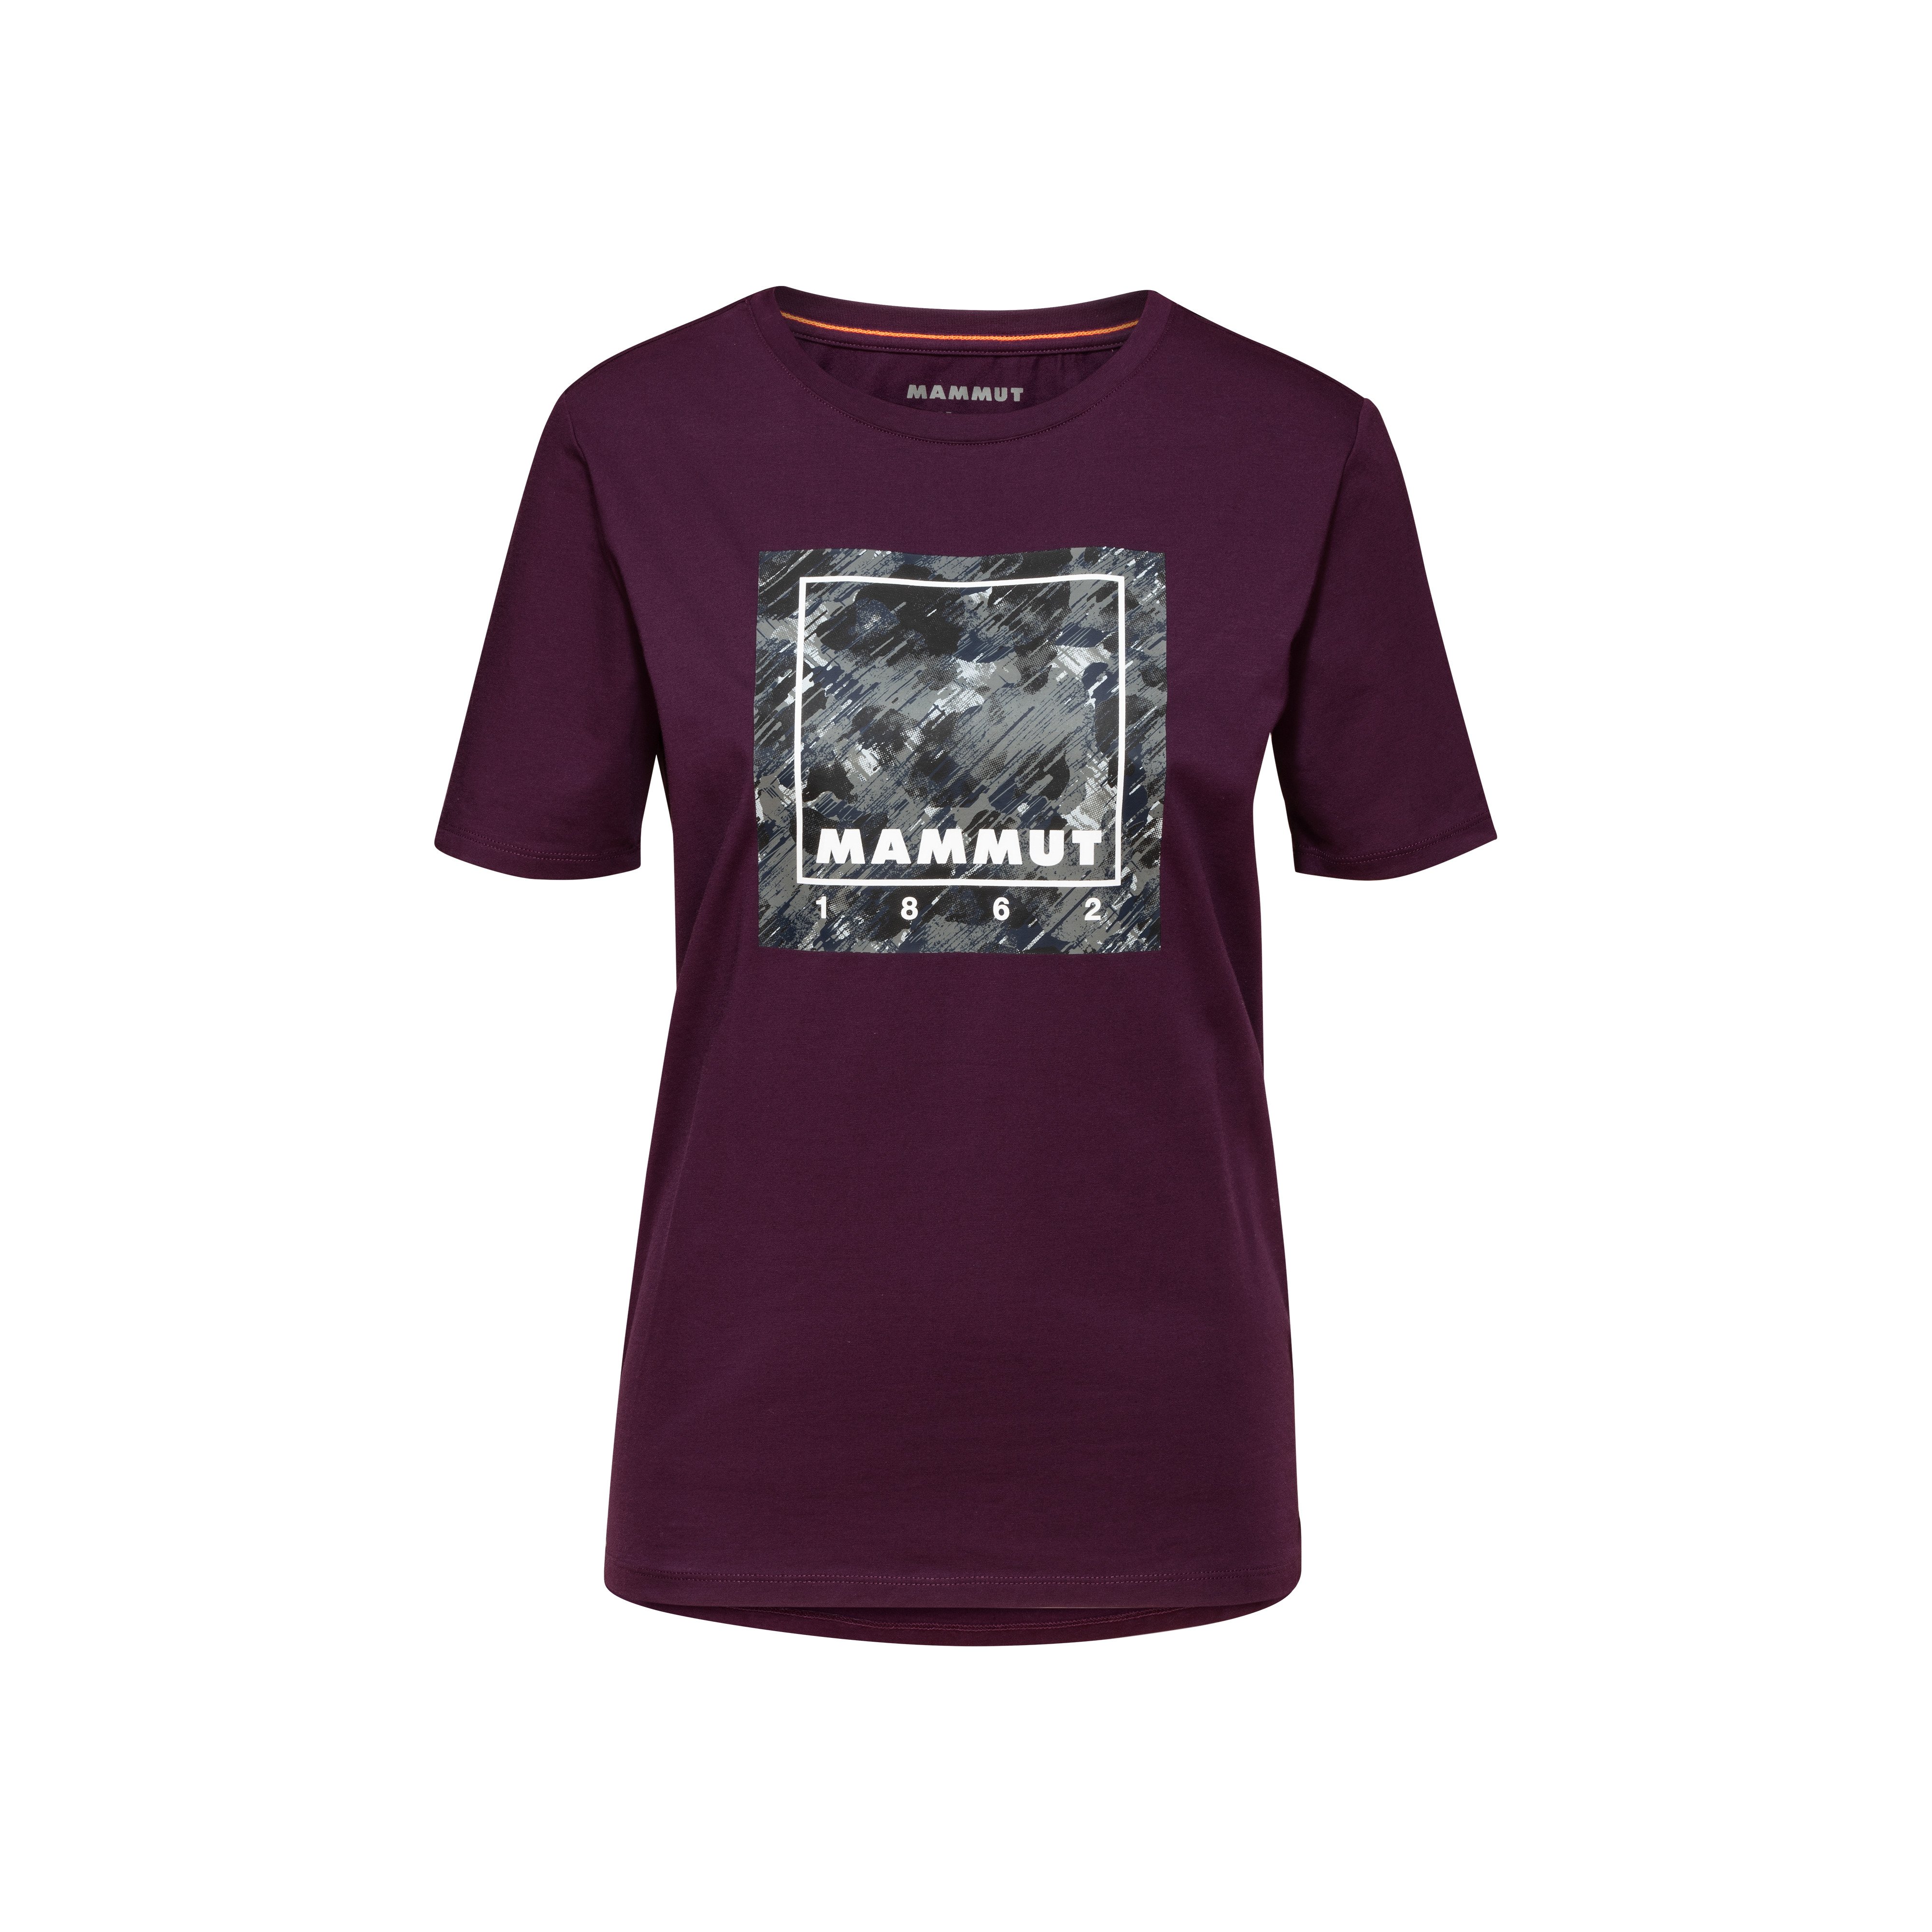 Mammut Graphic T-Shirt Women - grape, XS thumbnail